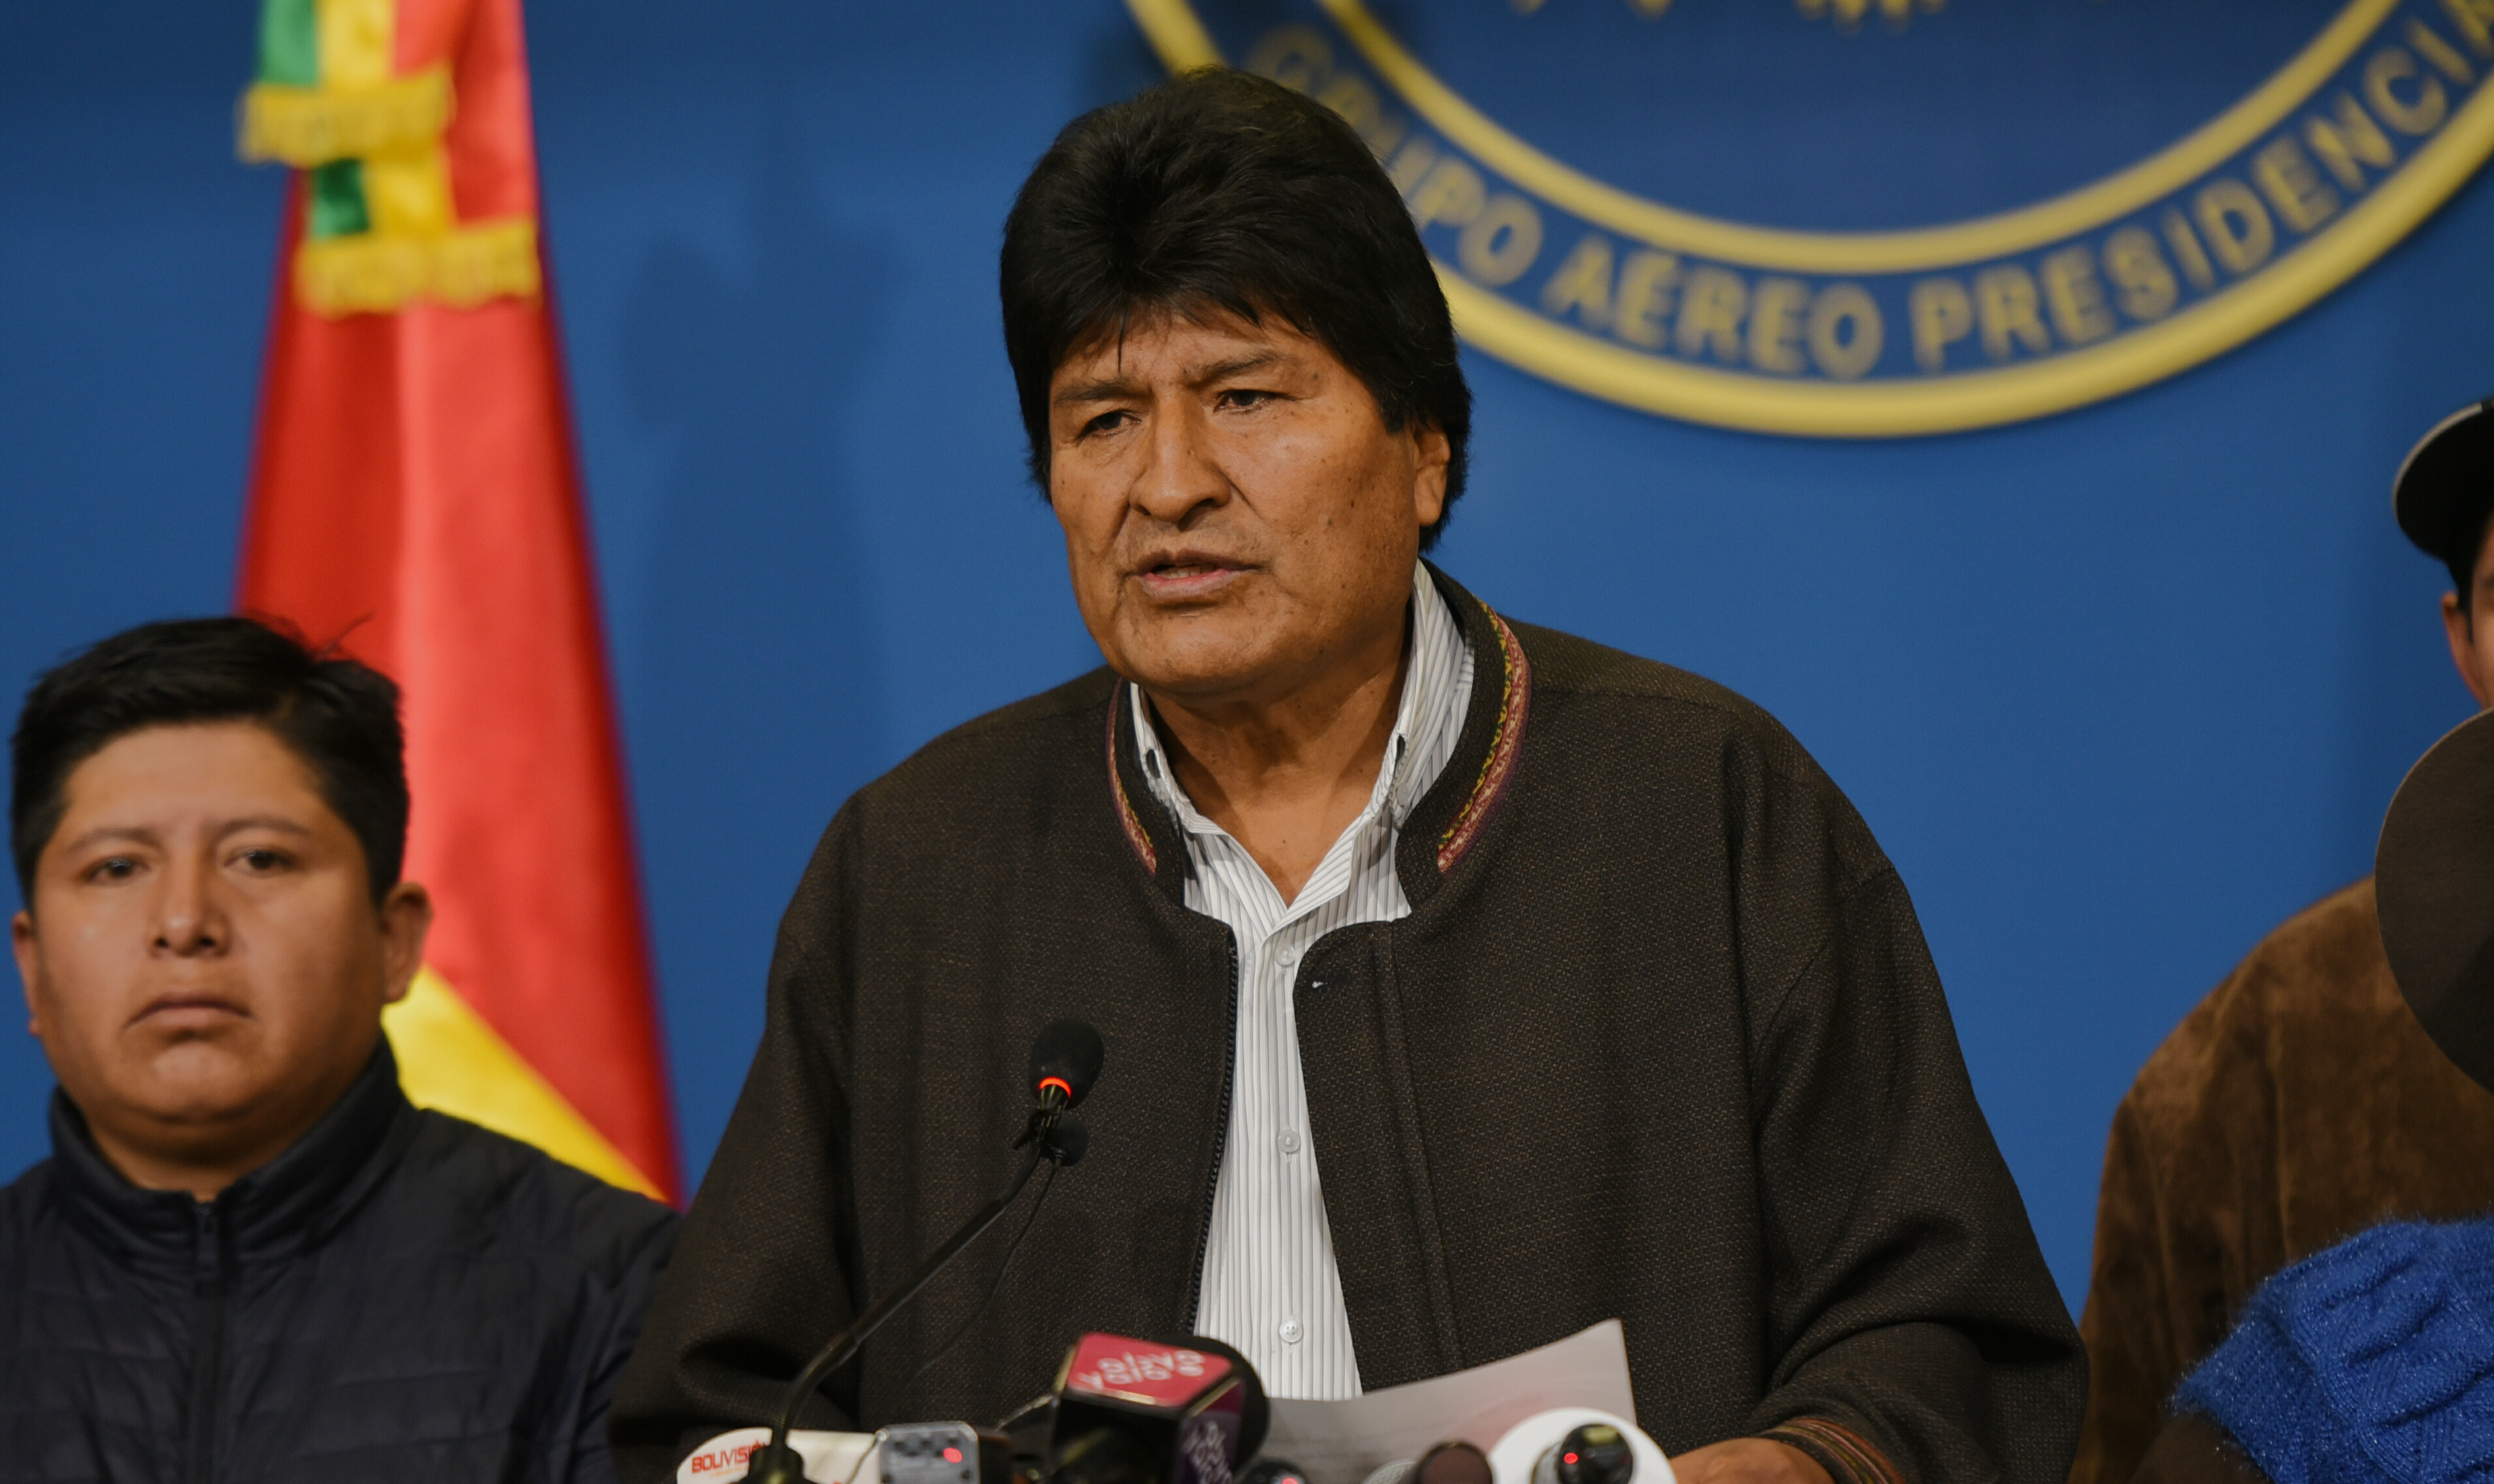 'As ações cometidas pela OEA no caso boliviano são absolutamente repudiáveis', afirma grupo; leia íntegra de comunicado